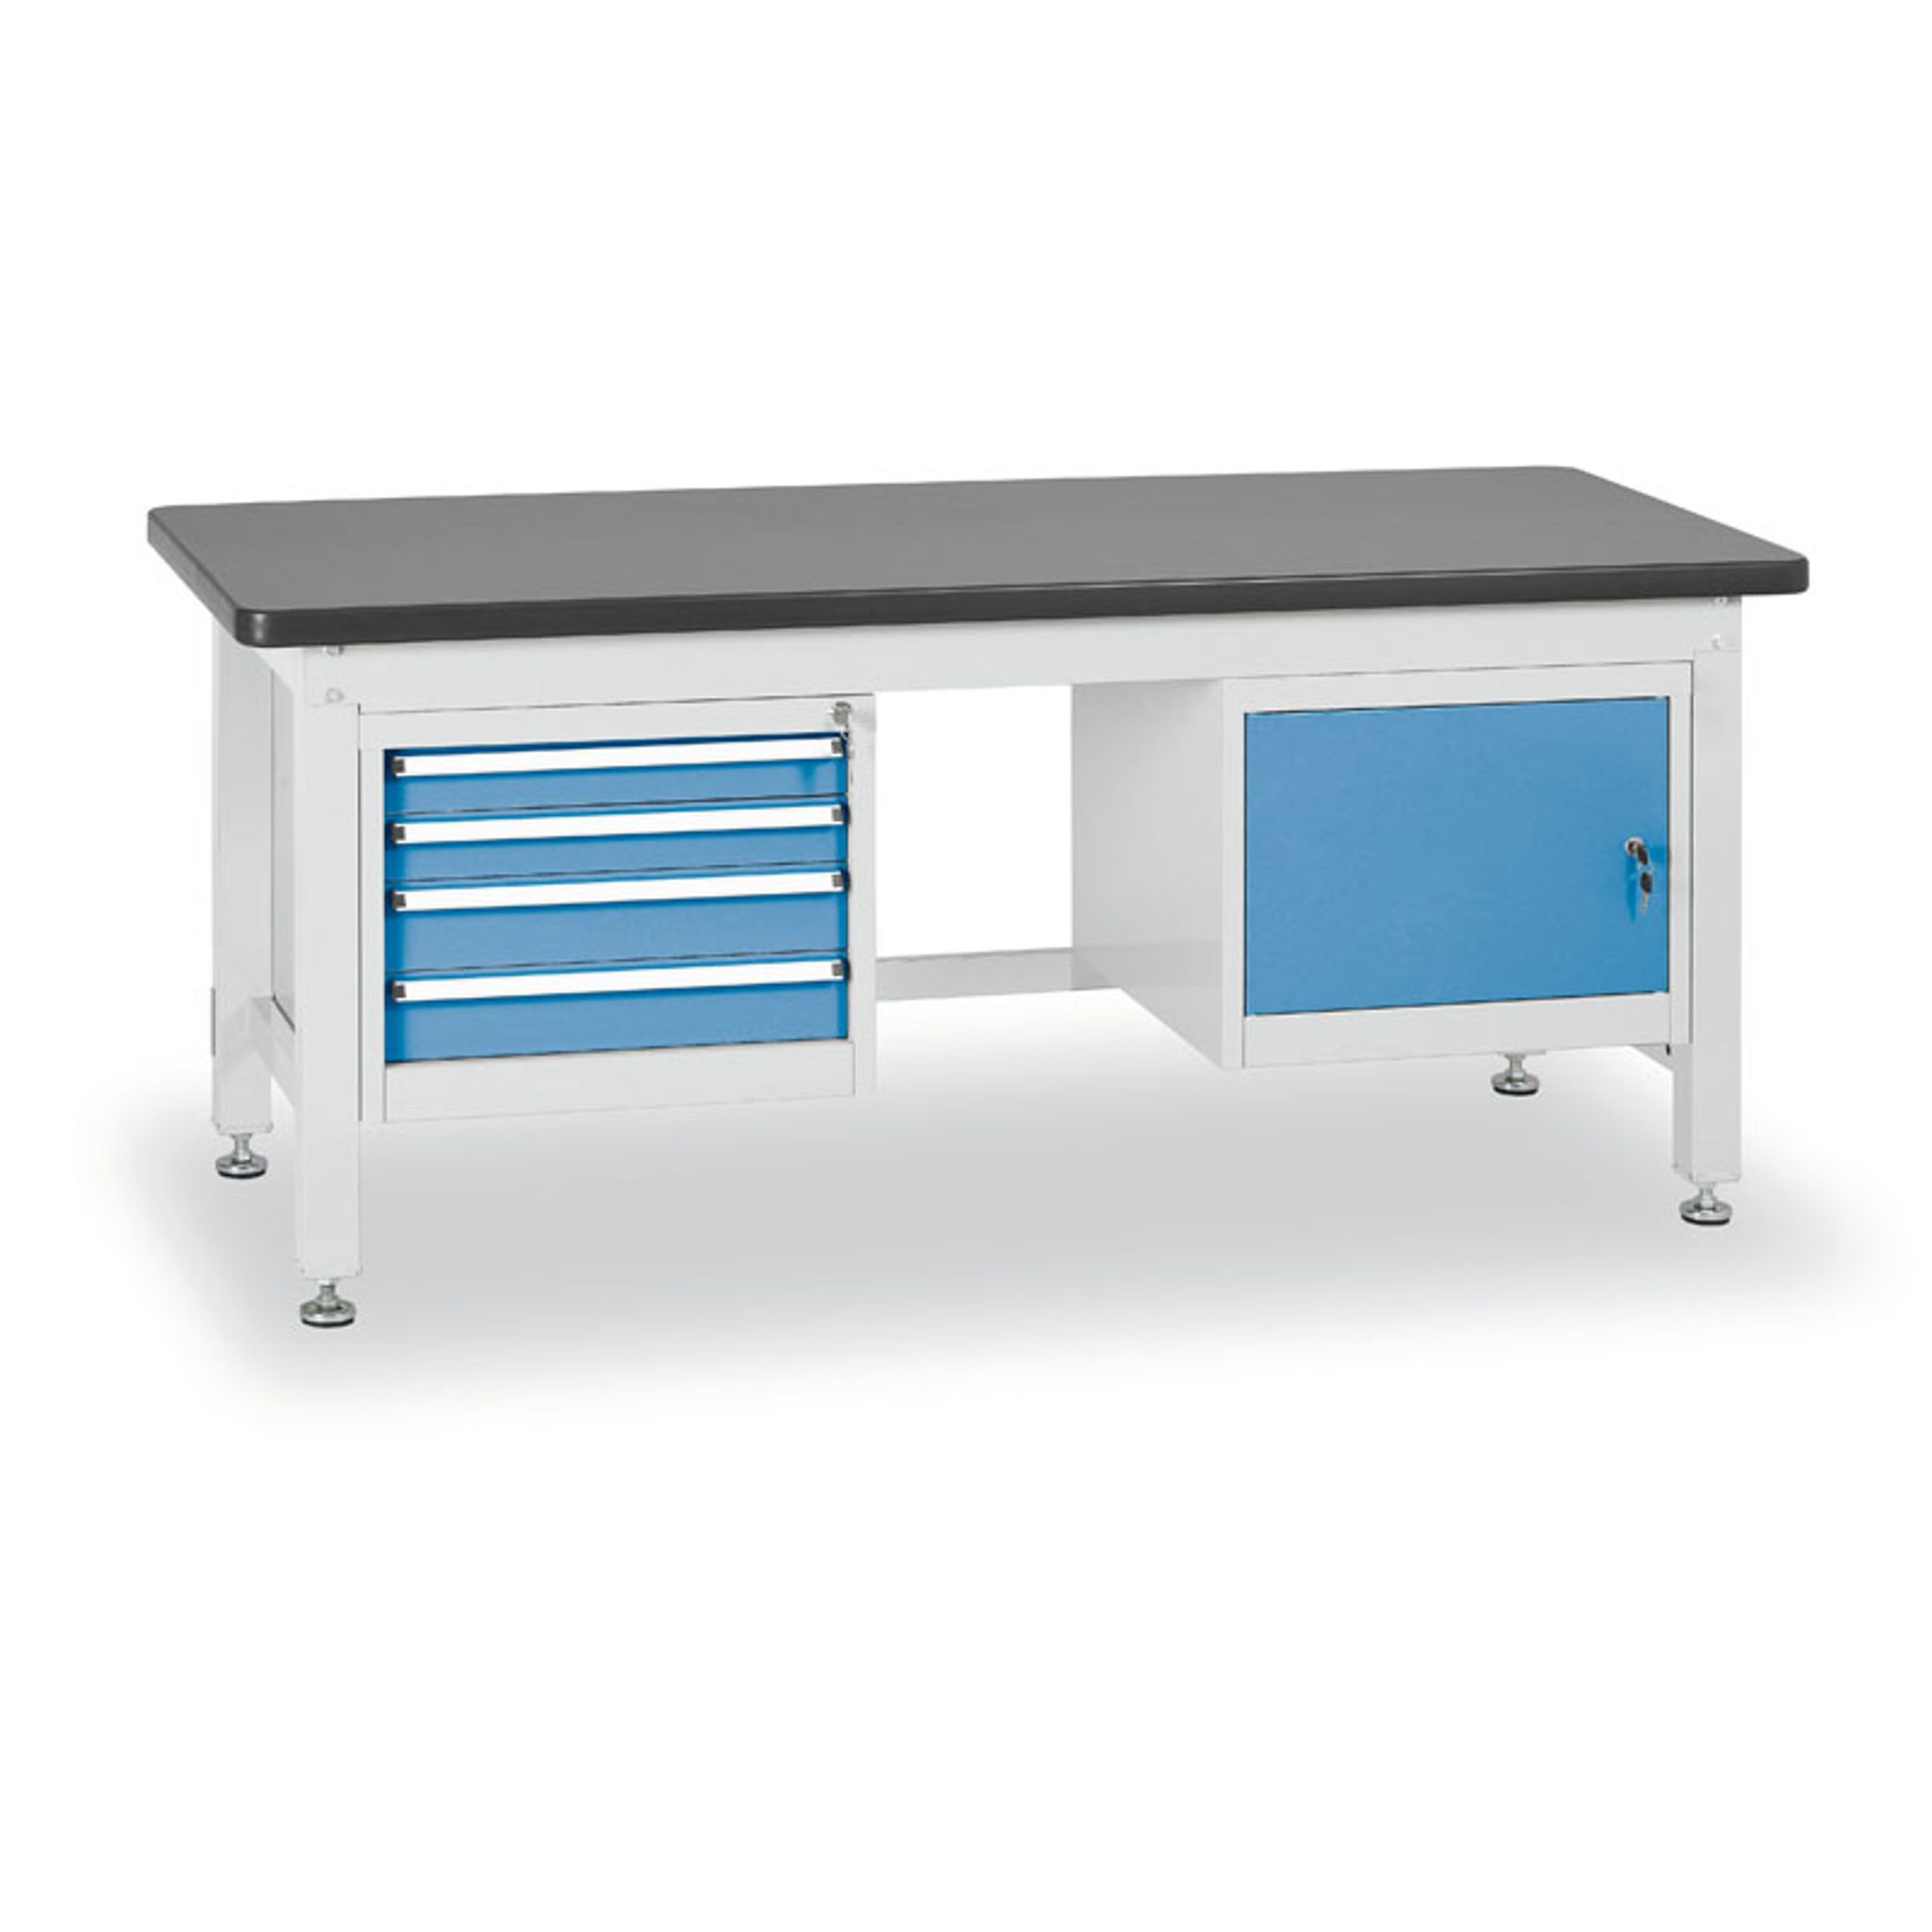 Pracovný stôl do dielne BL so závesným boxom a skrinkou na náradie, MDF + PVC doska, 4 zásuvky, 1 skrinka, 1800 x 750 x 800 mm